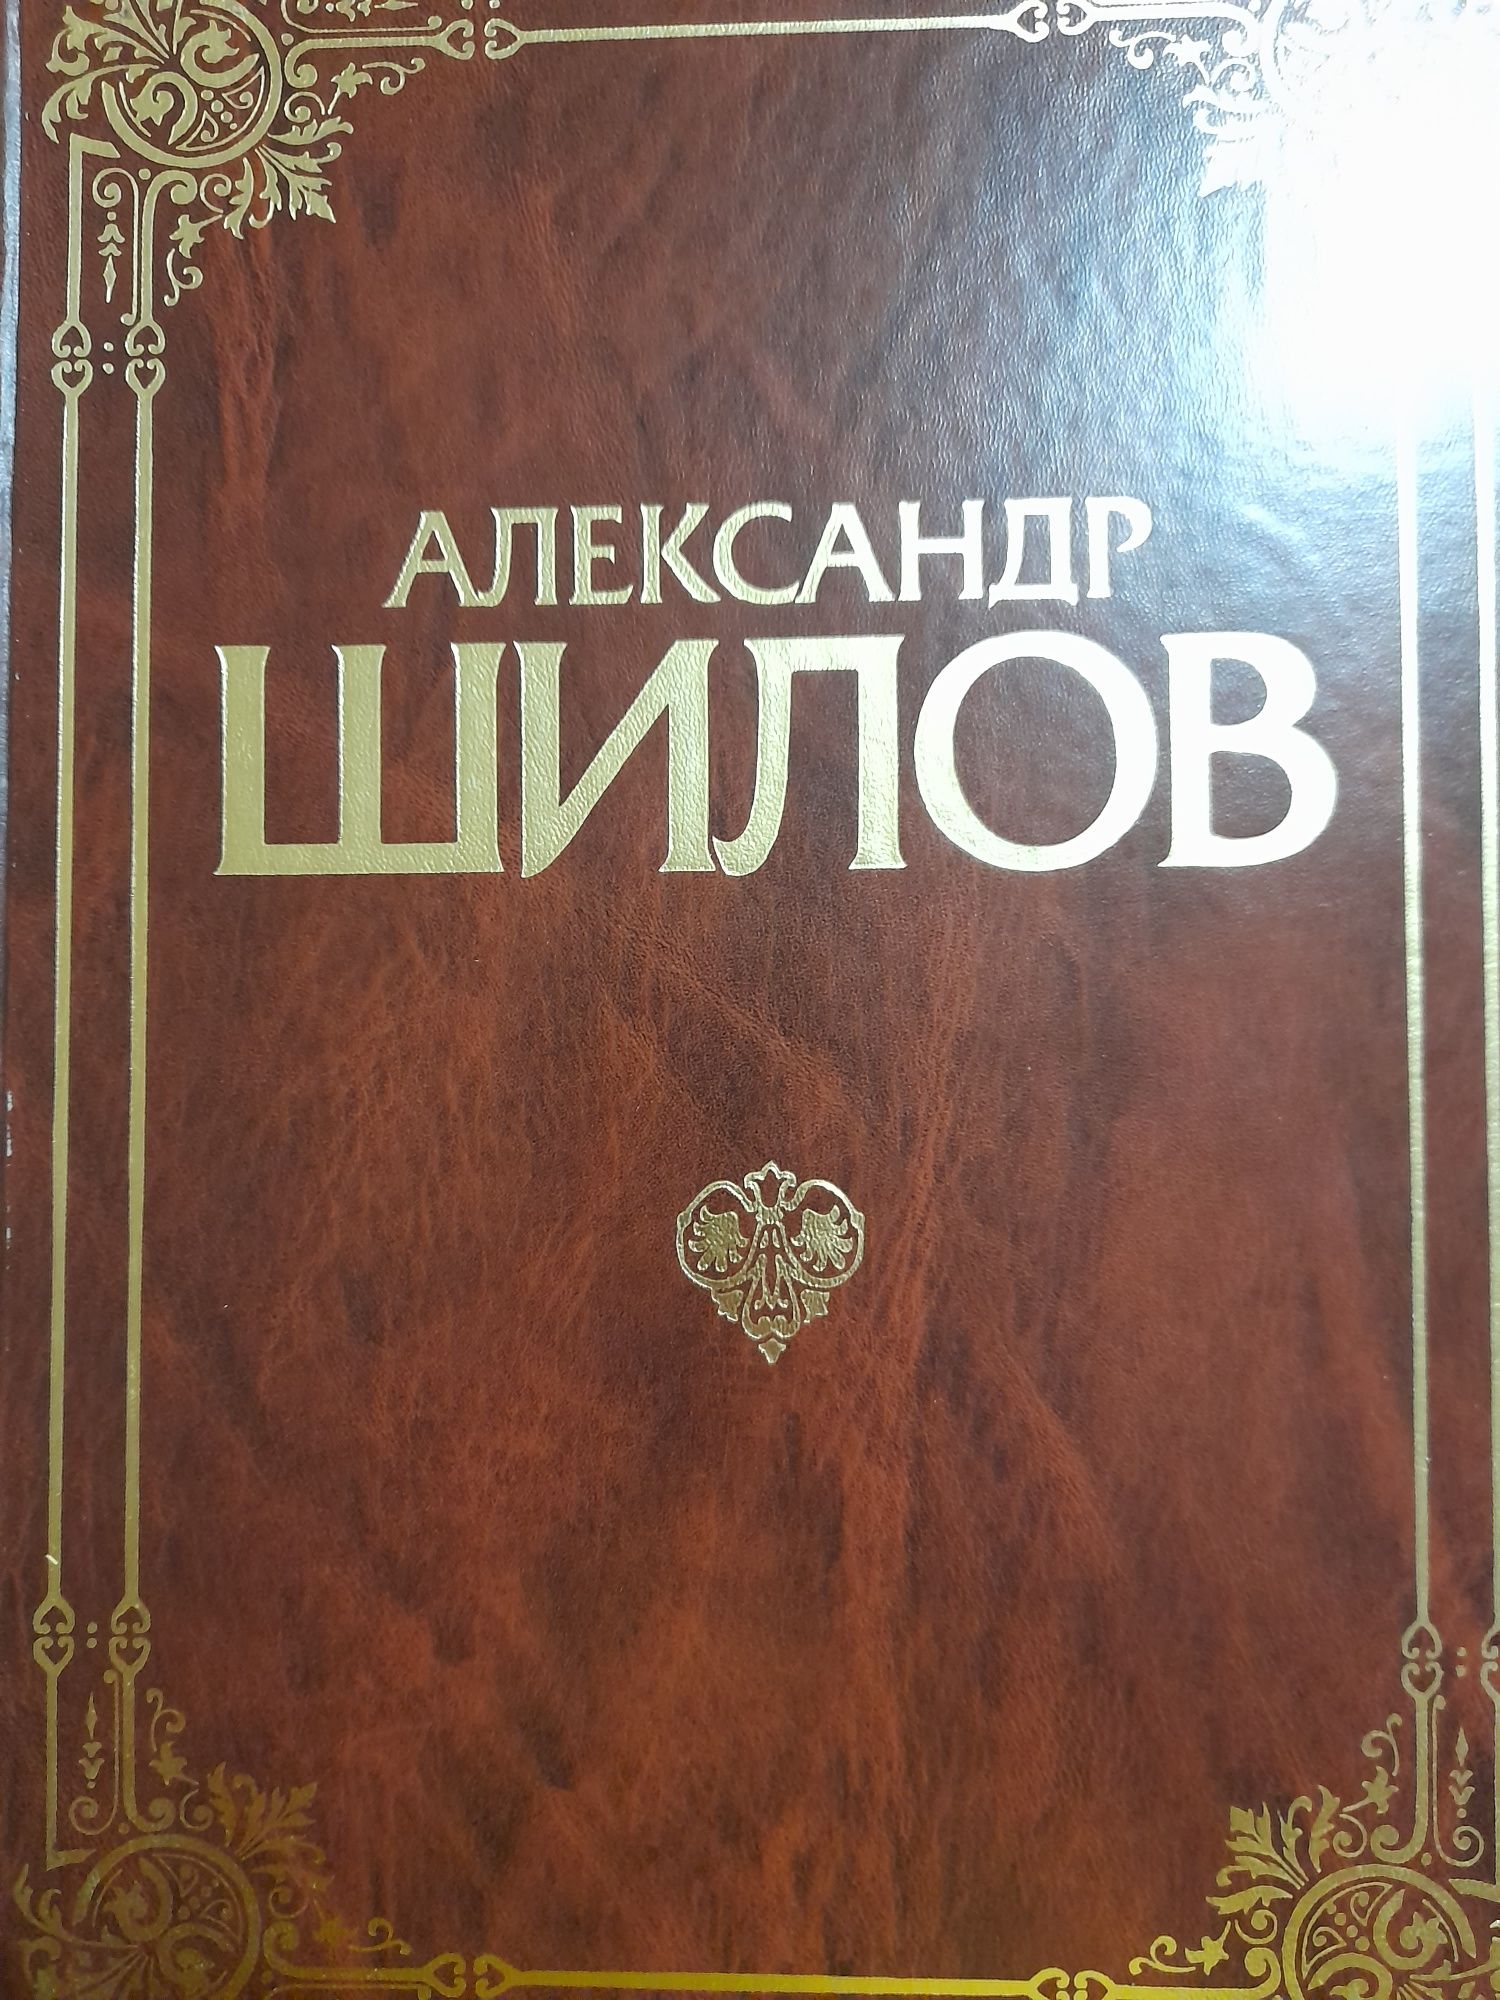 Книга альбом, репродукции Александра Шилова